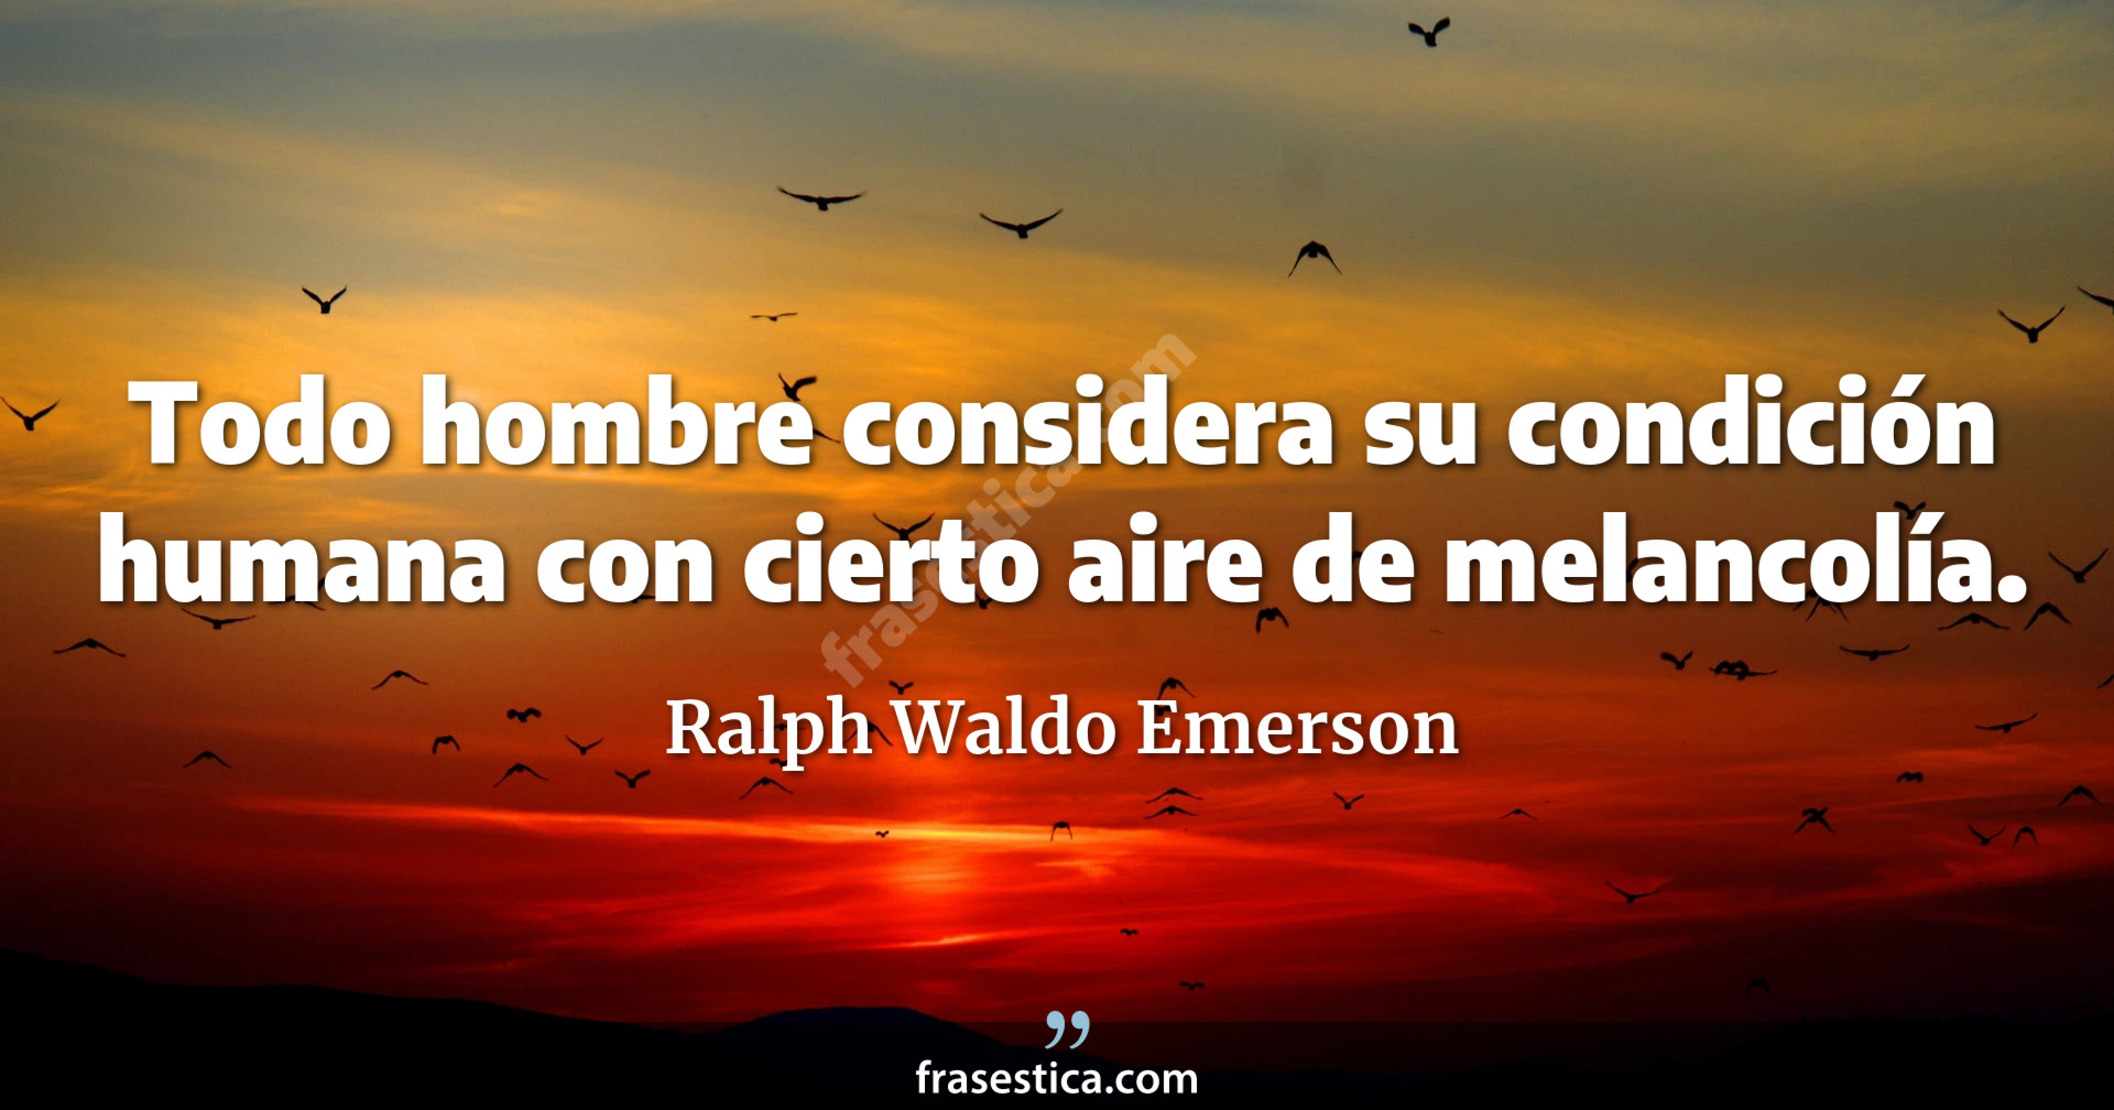 Todo hombre considera su condición humana con cierto aire de melancolía. - Ralph Waldo Emerson